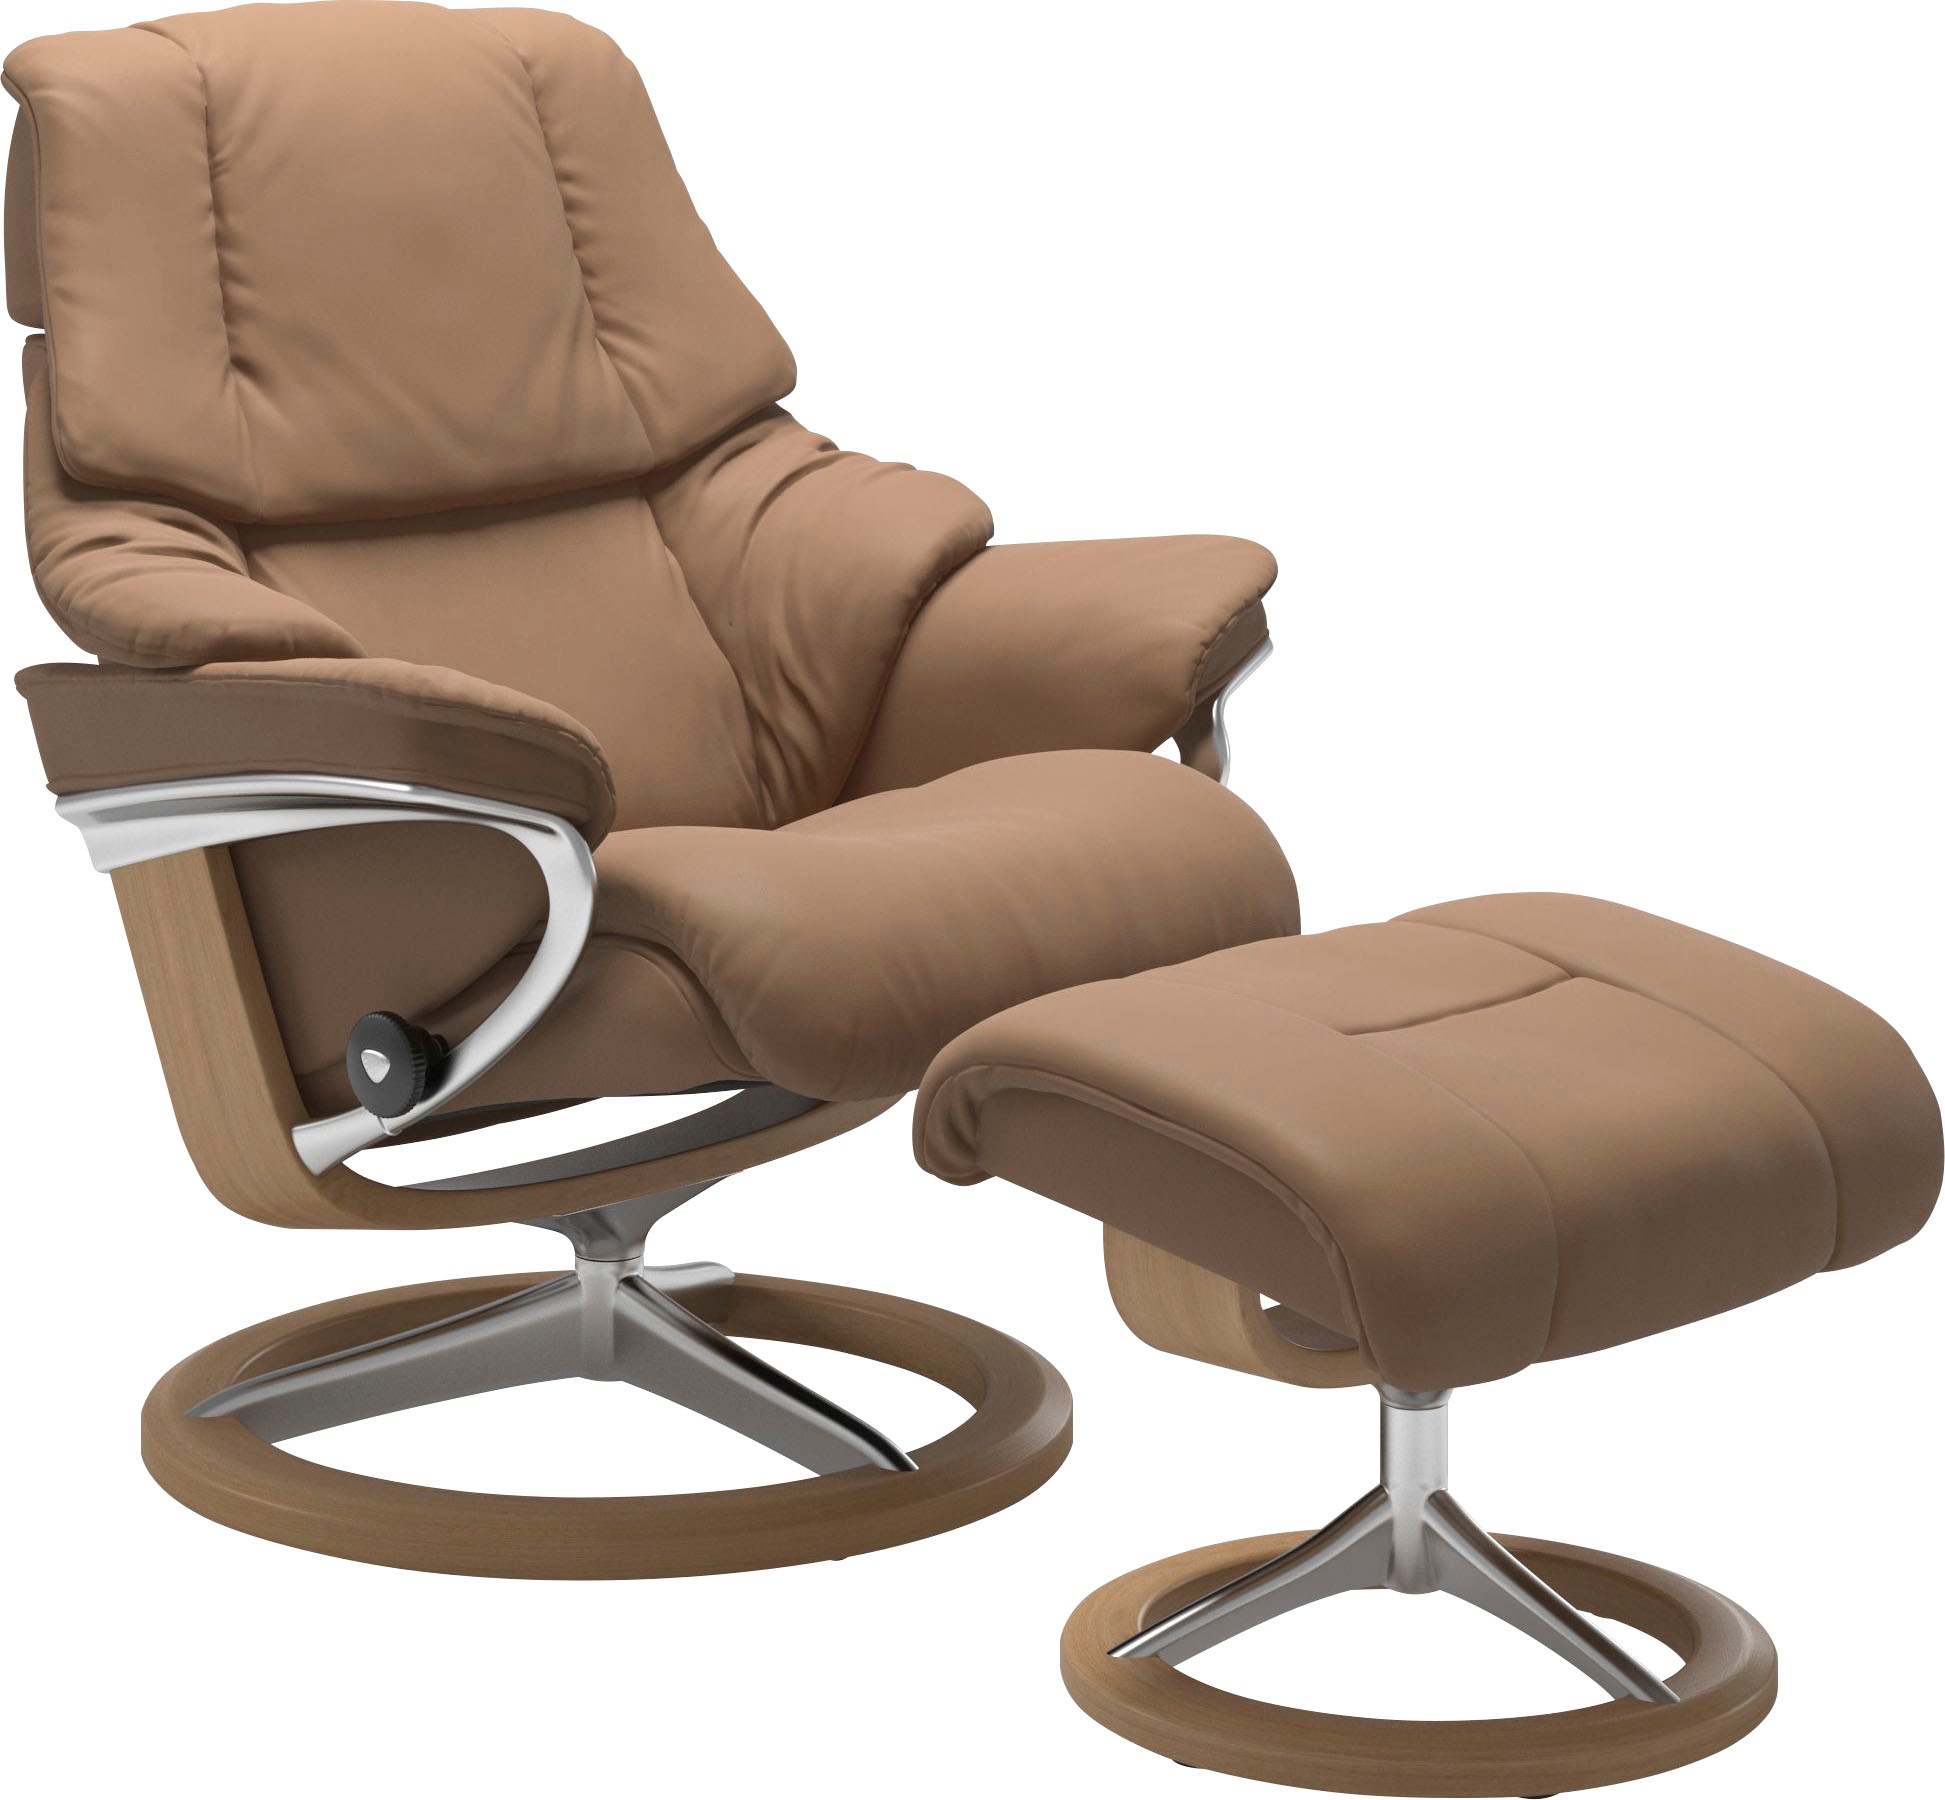 Stressless ® Atpalaiduojanti kėdė »Reno« su Signa...